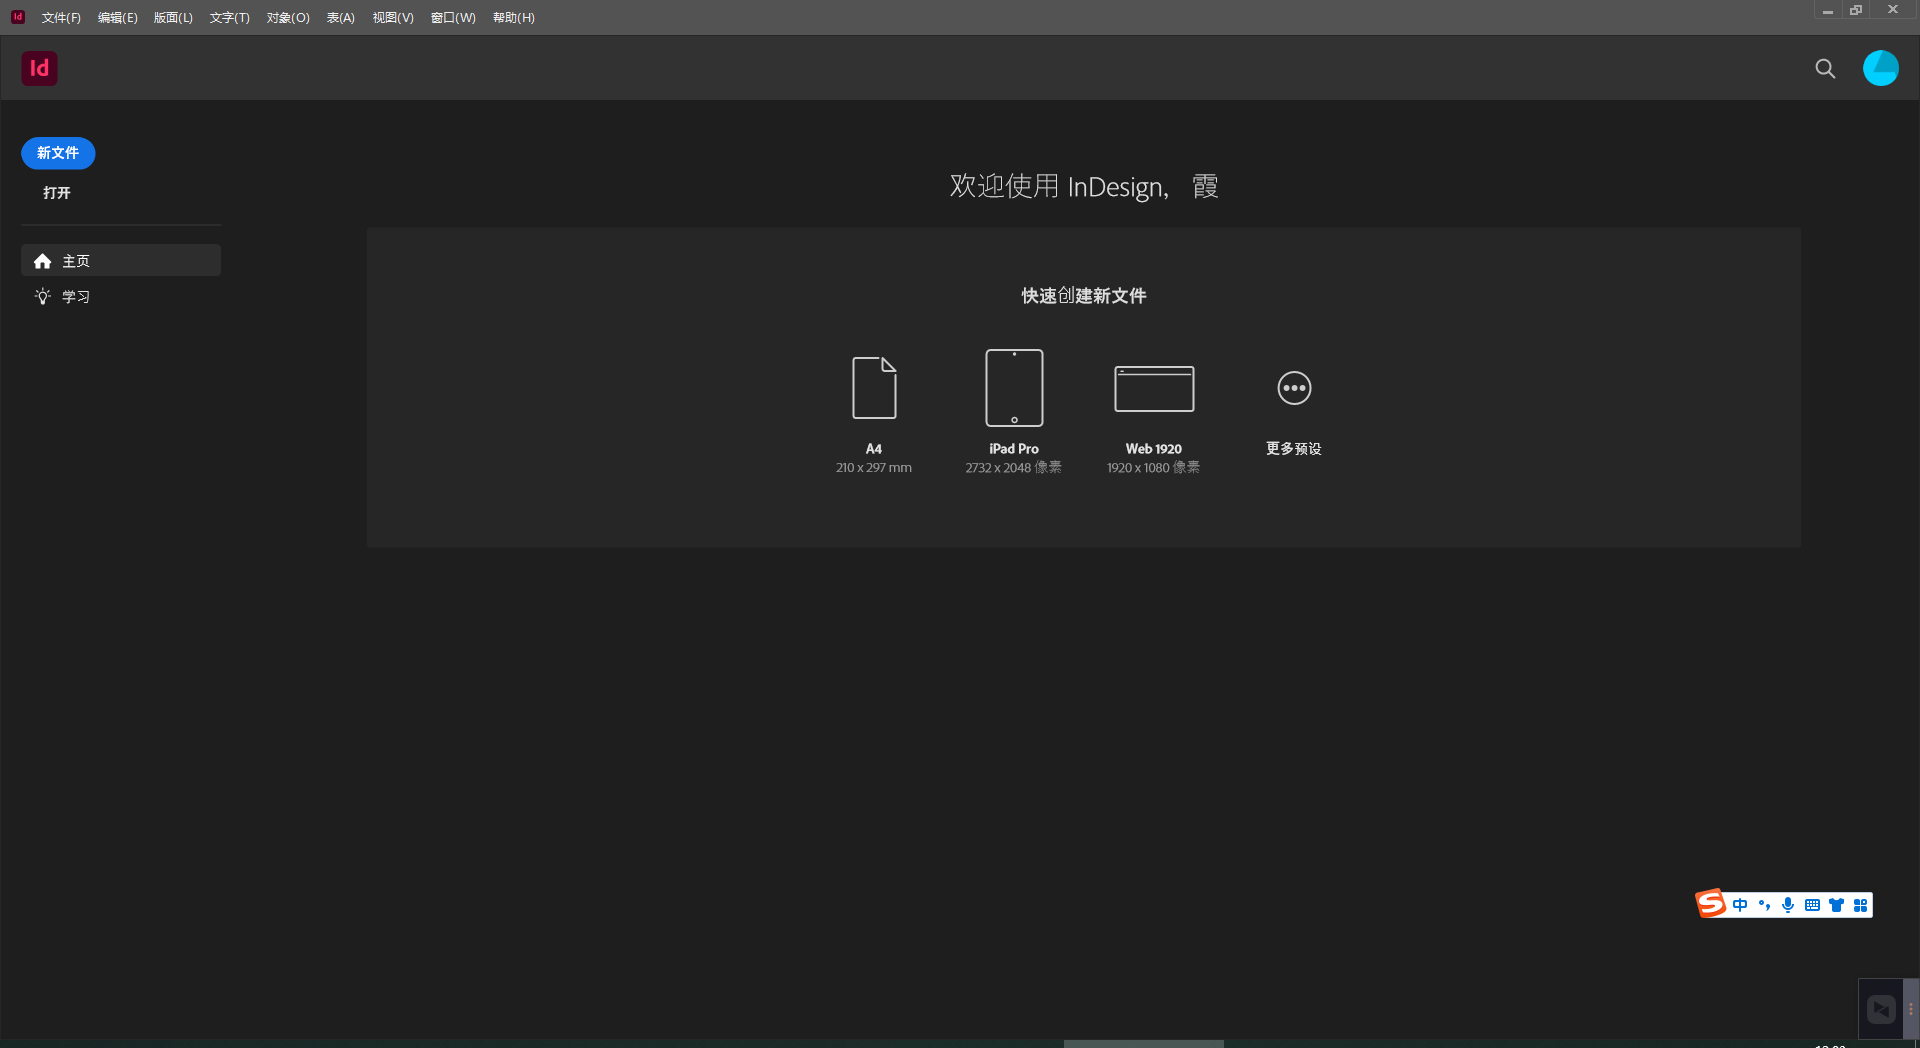 Adobe InDesign 2023 v18.5.0.57 instal